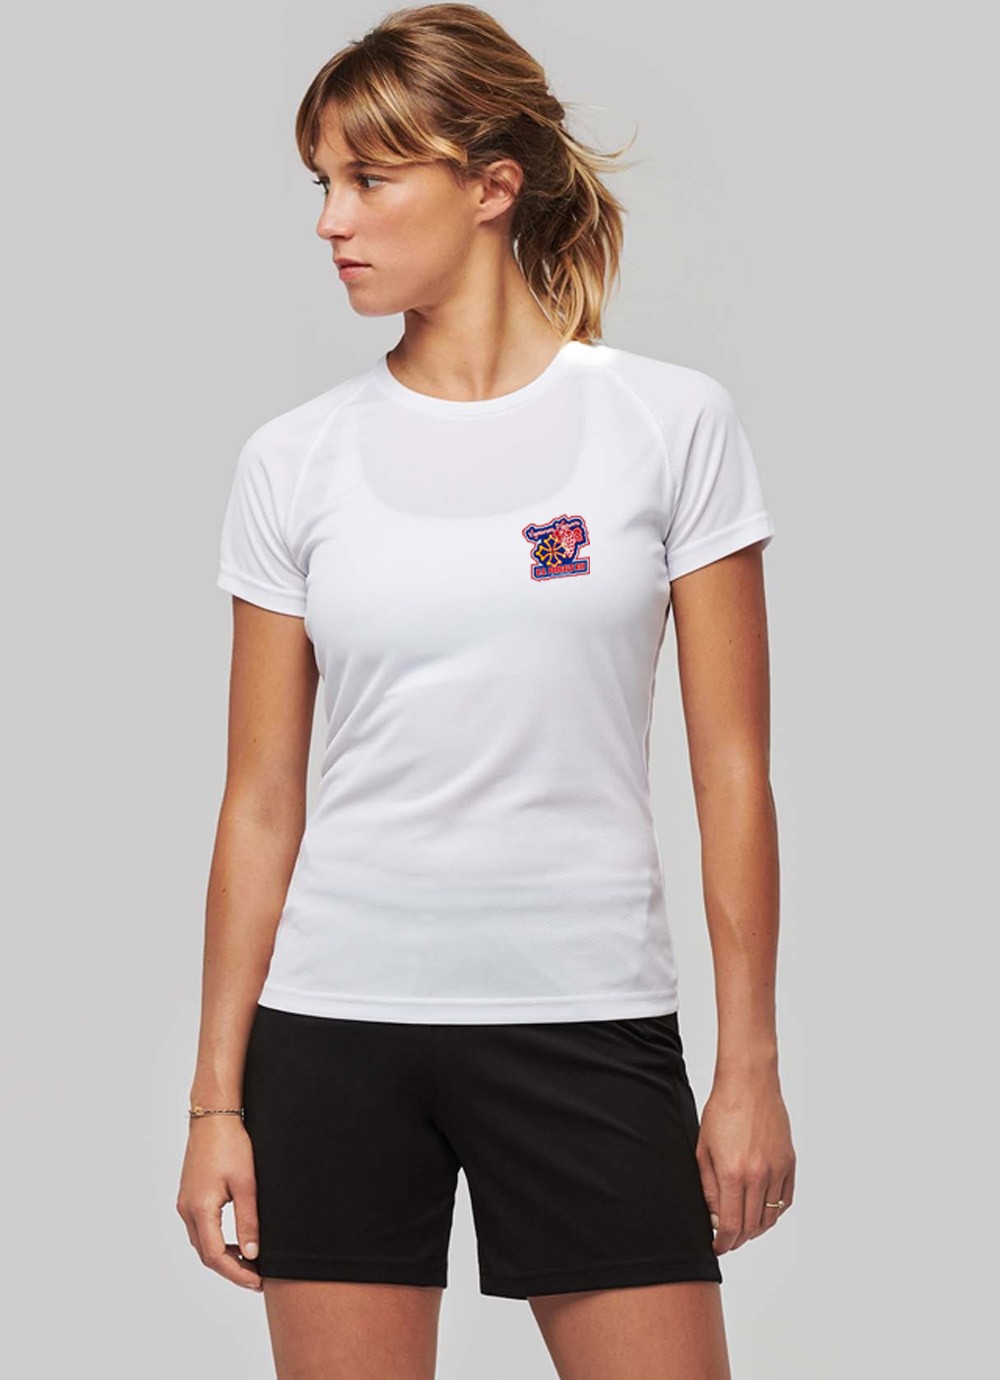 Tshirt sport femme US Ferrals XIII blanc